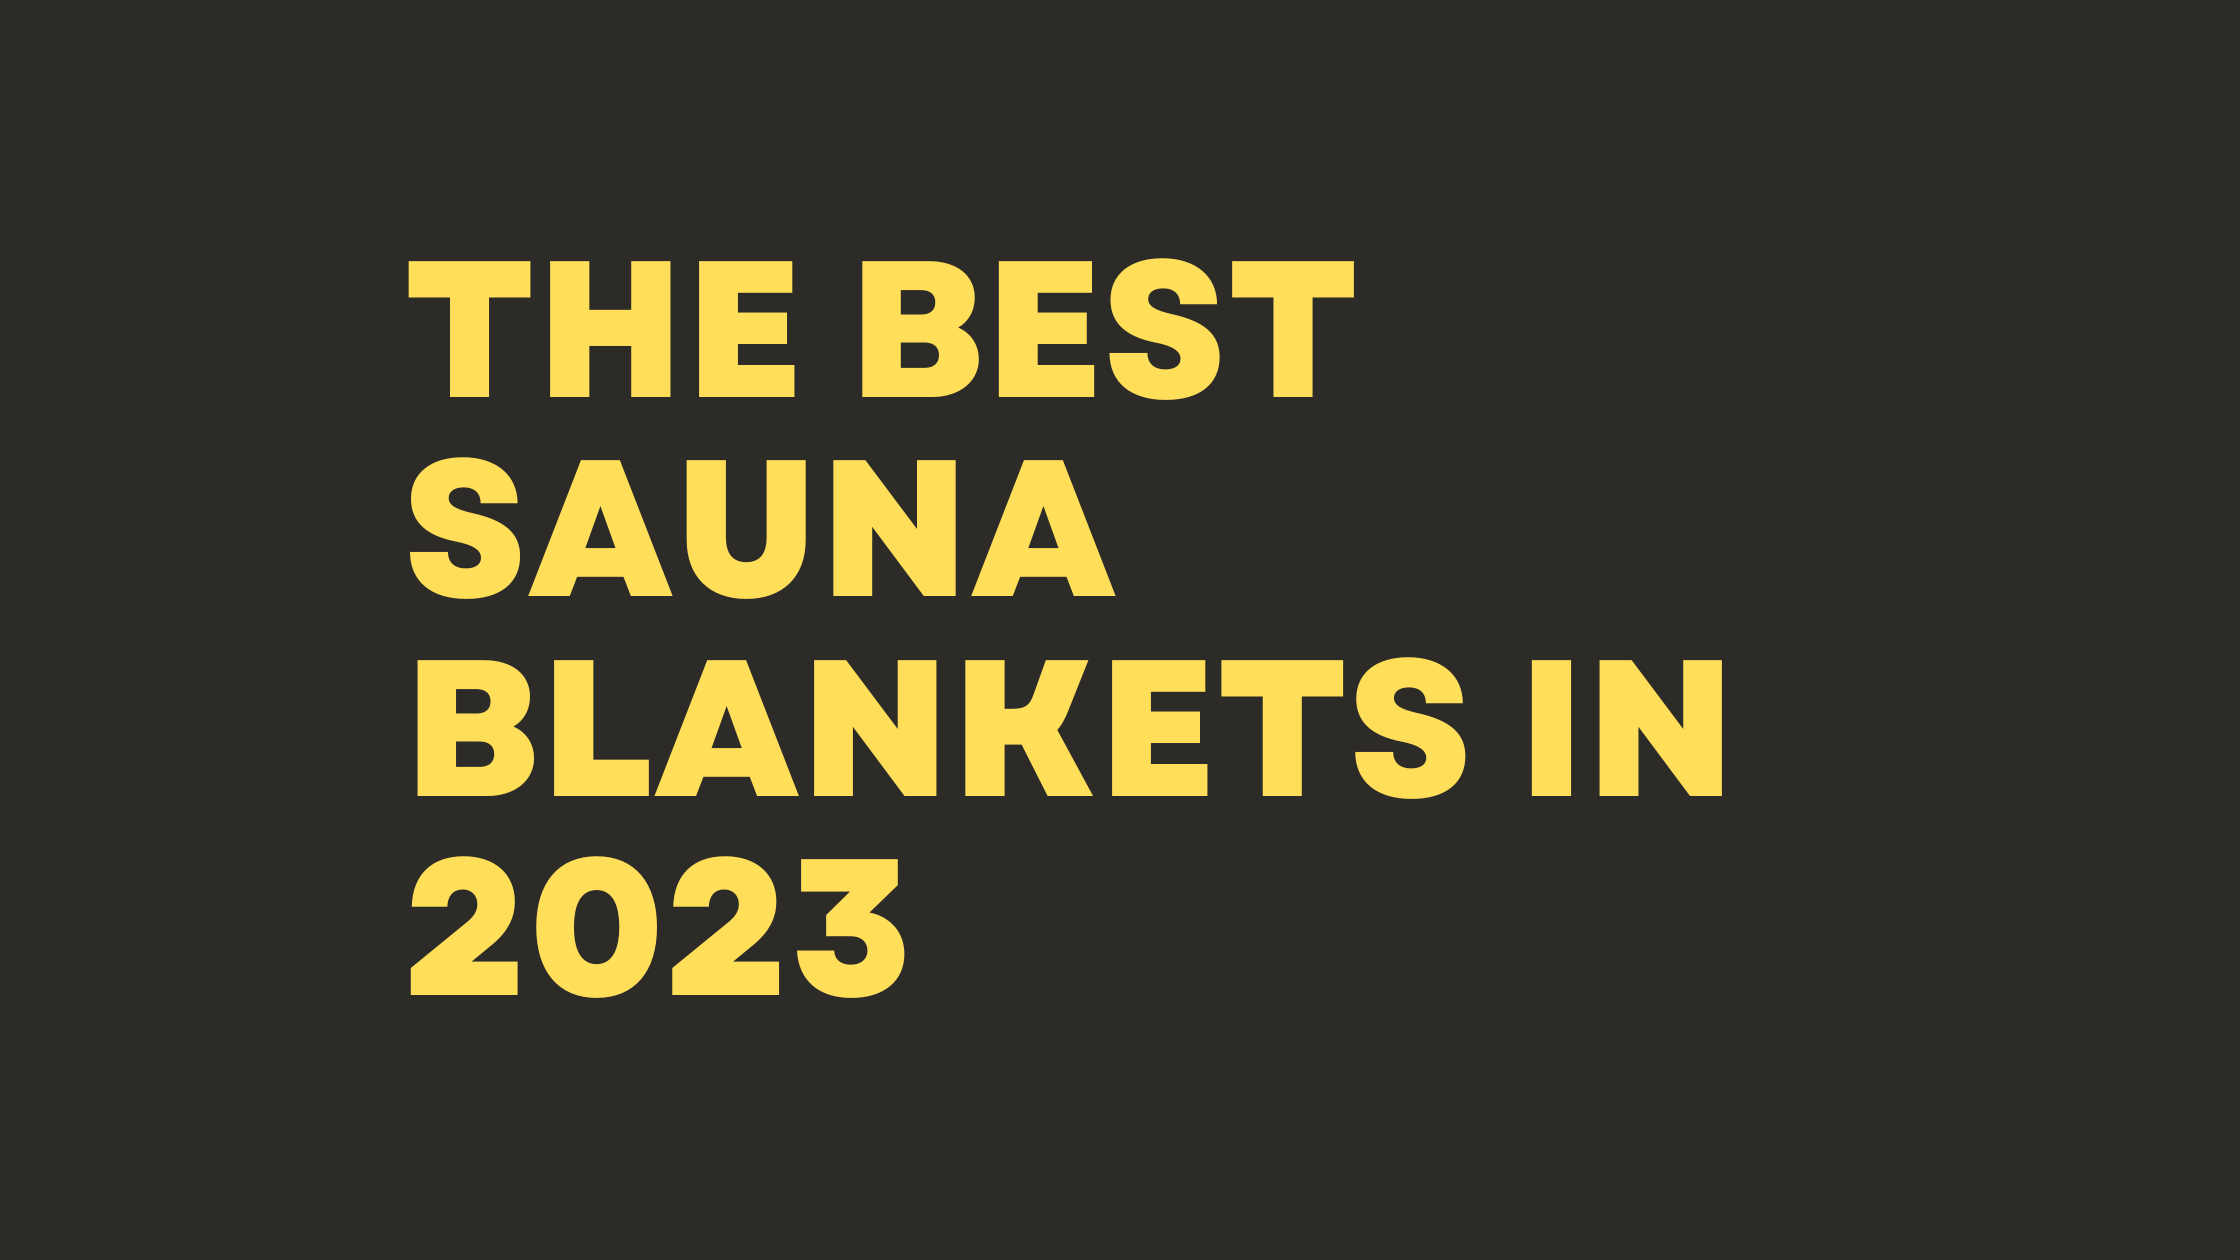 The Best Sauna Blankets in 2023